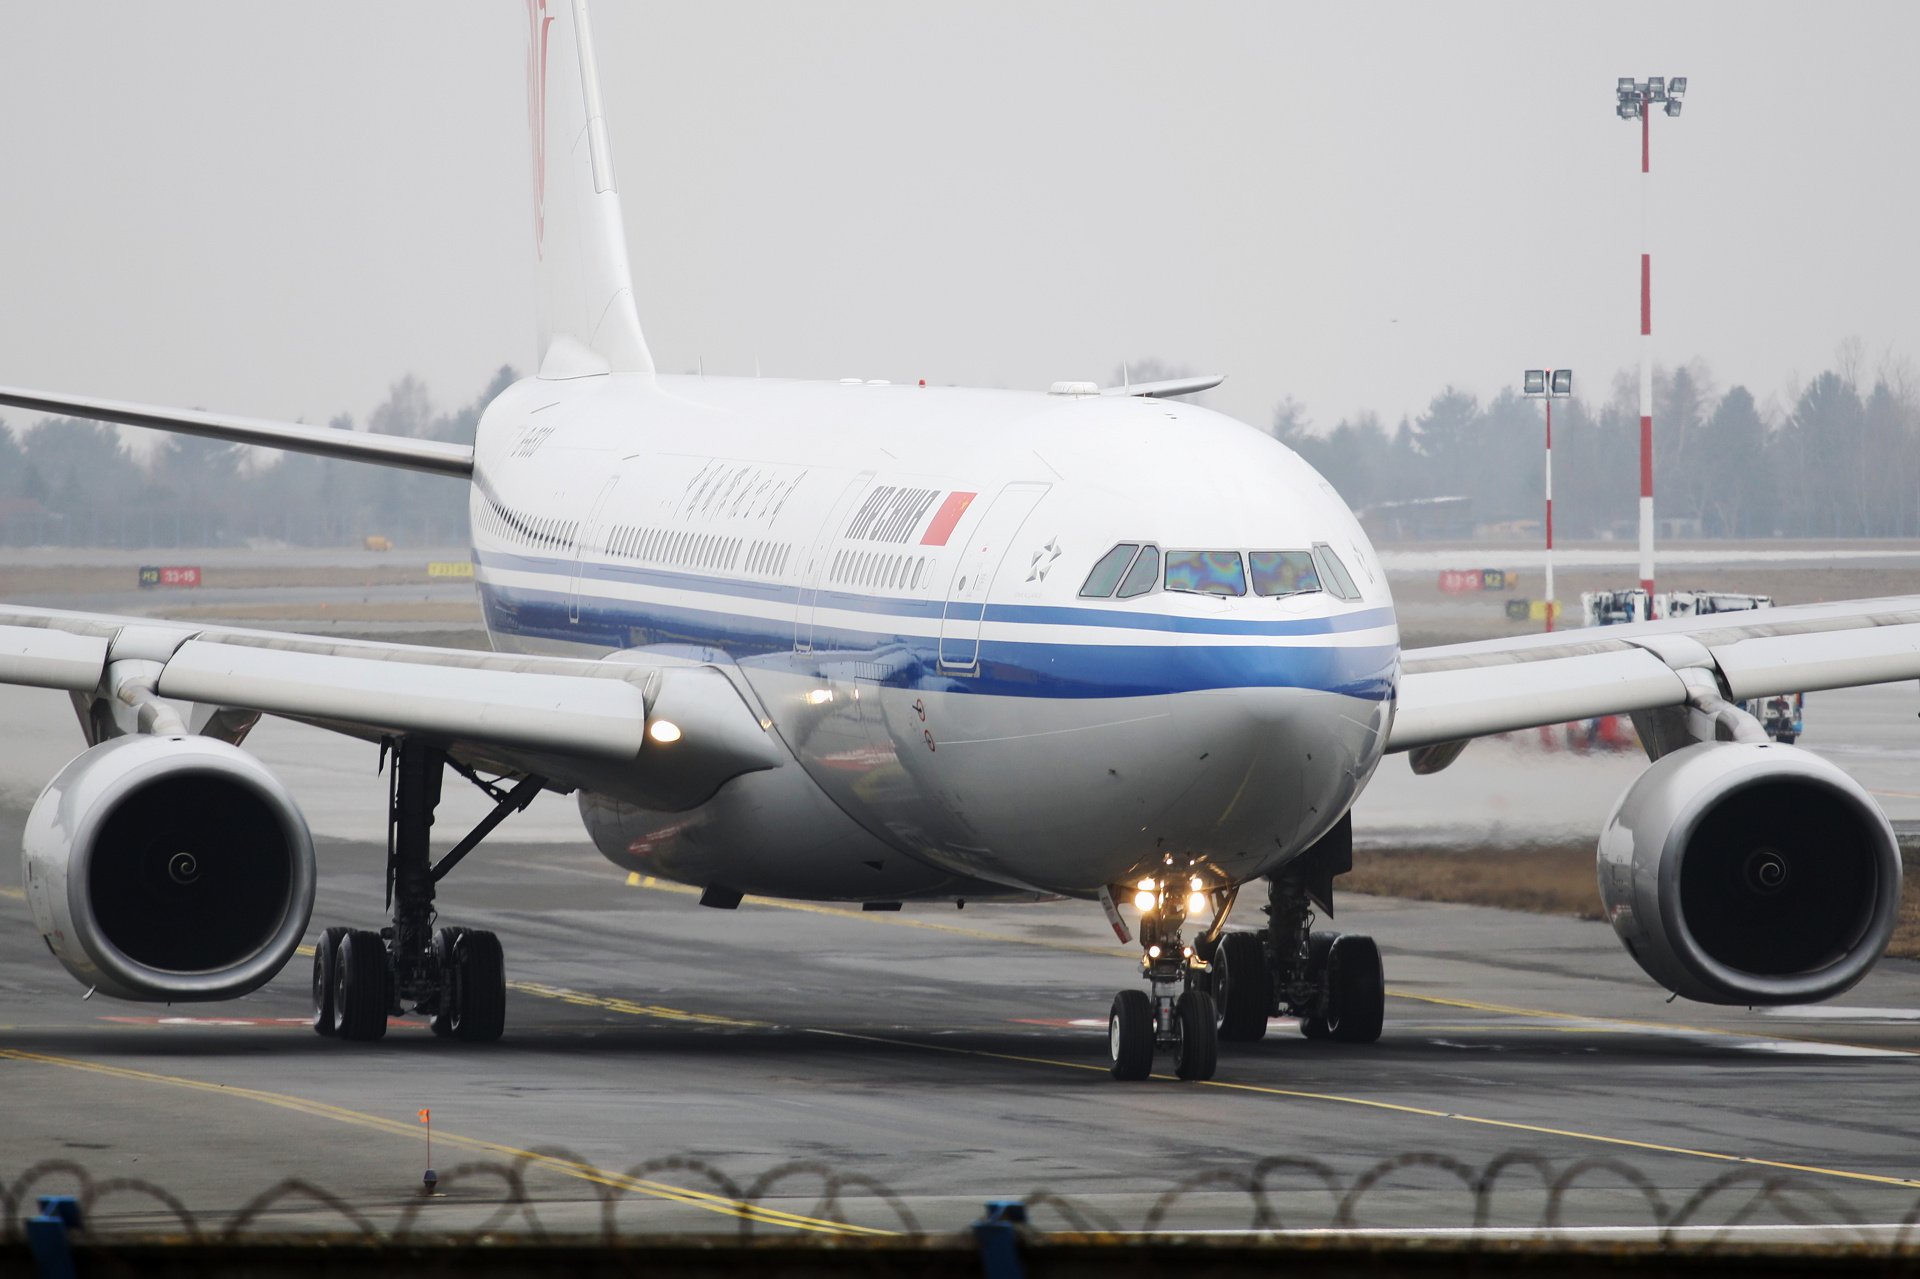 B-6533 (Aircraft » EPWA Spotting » Airbus A330-200 » Air China)